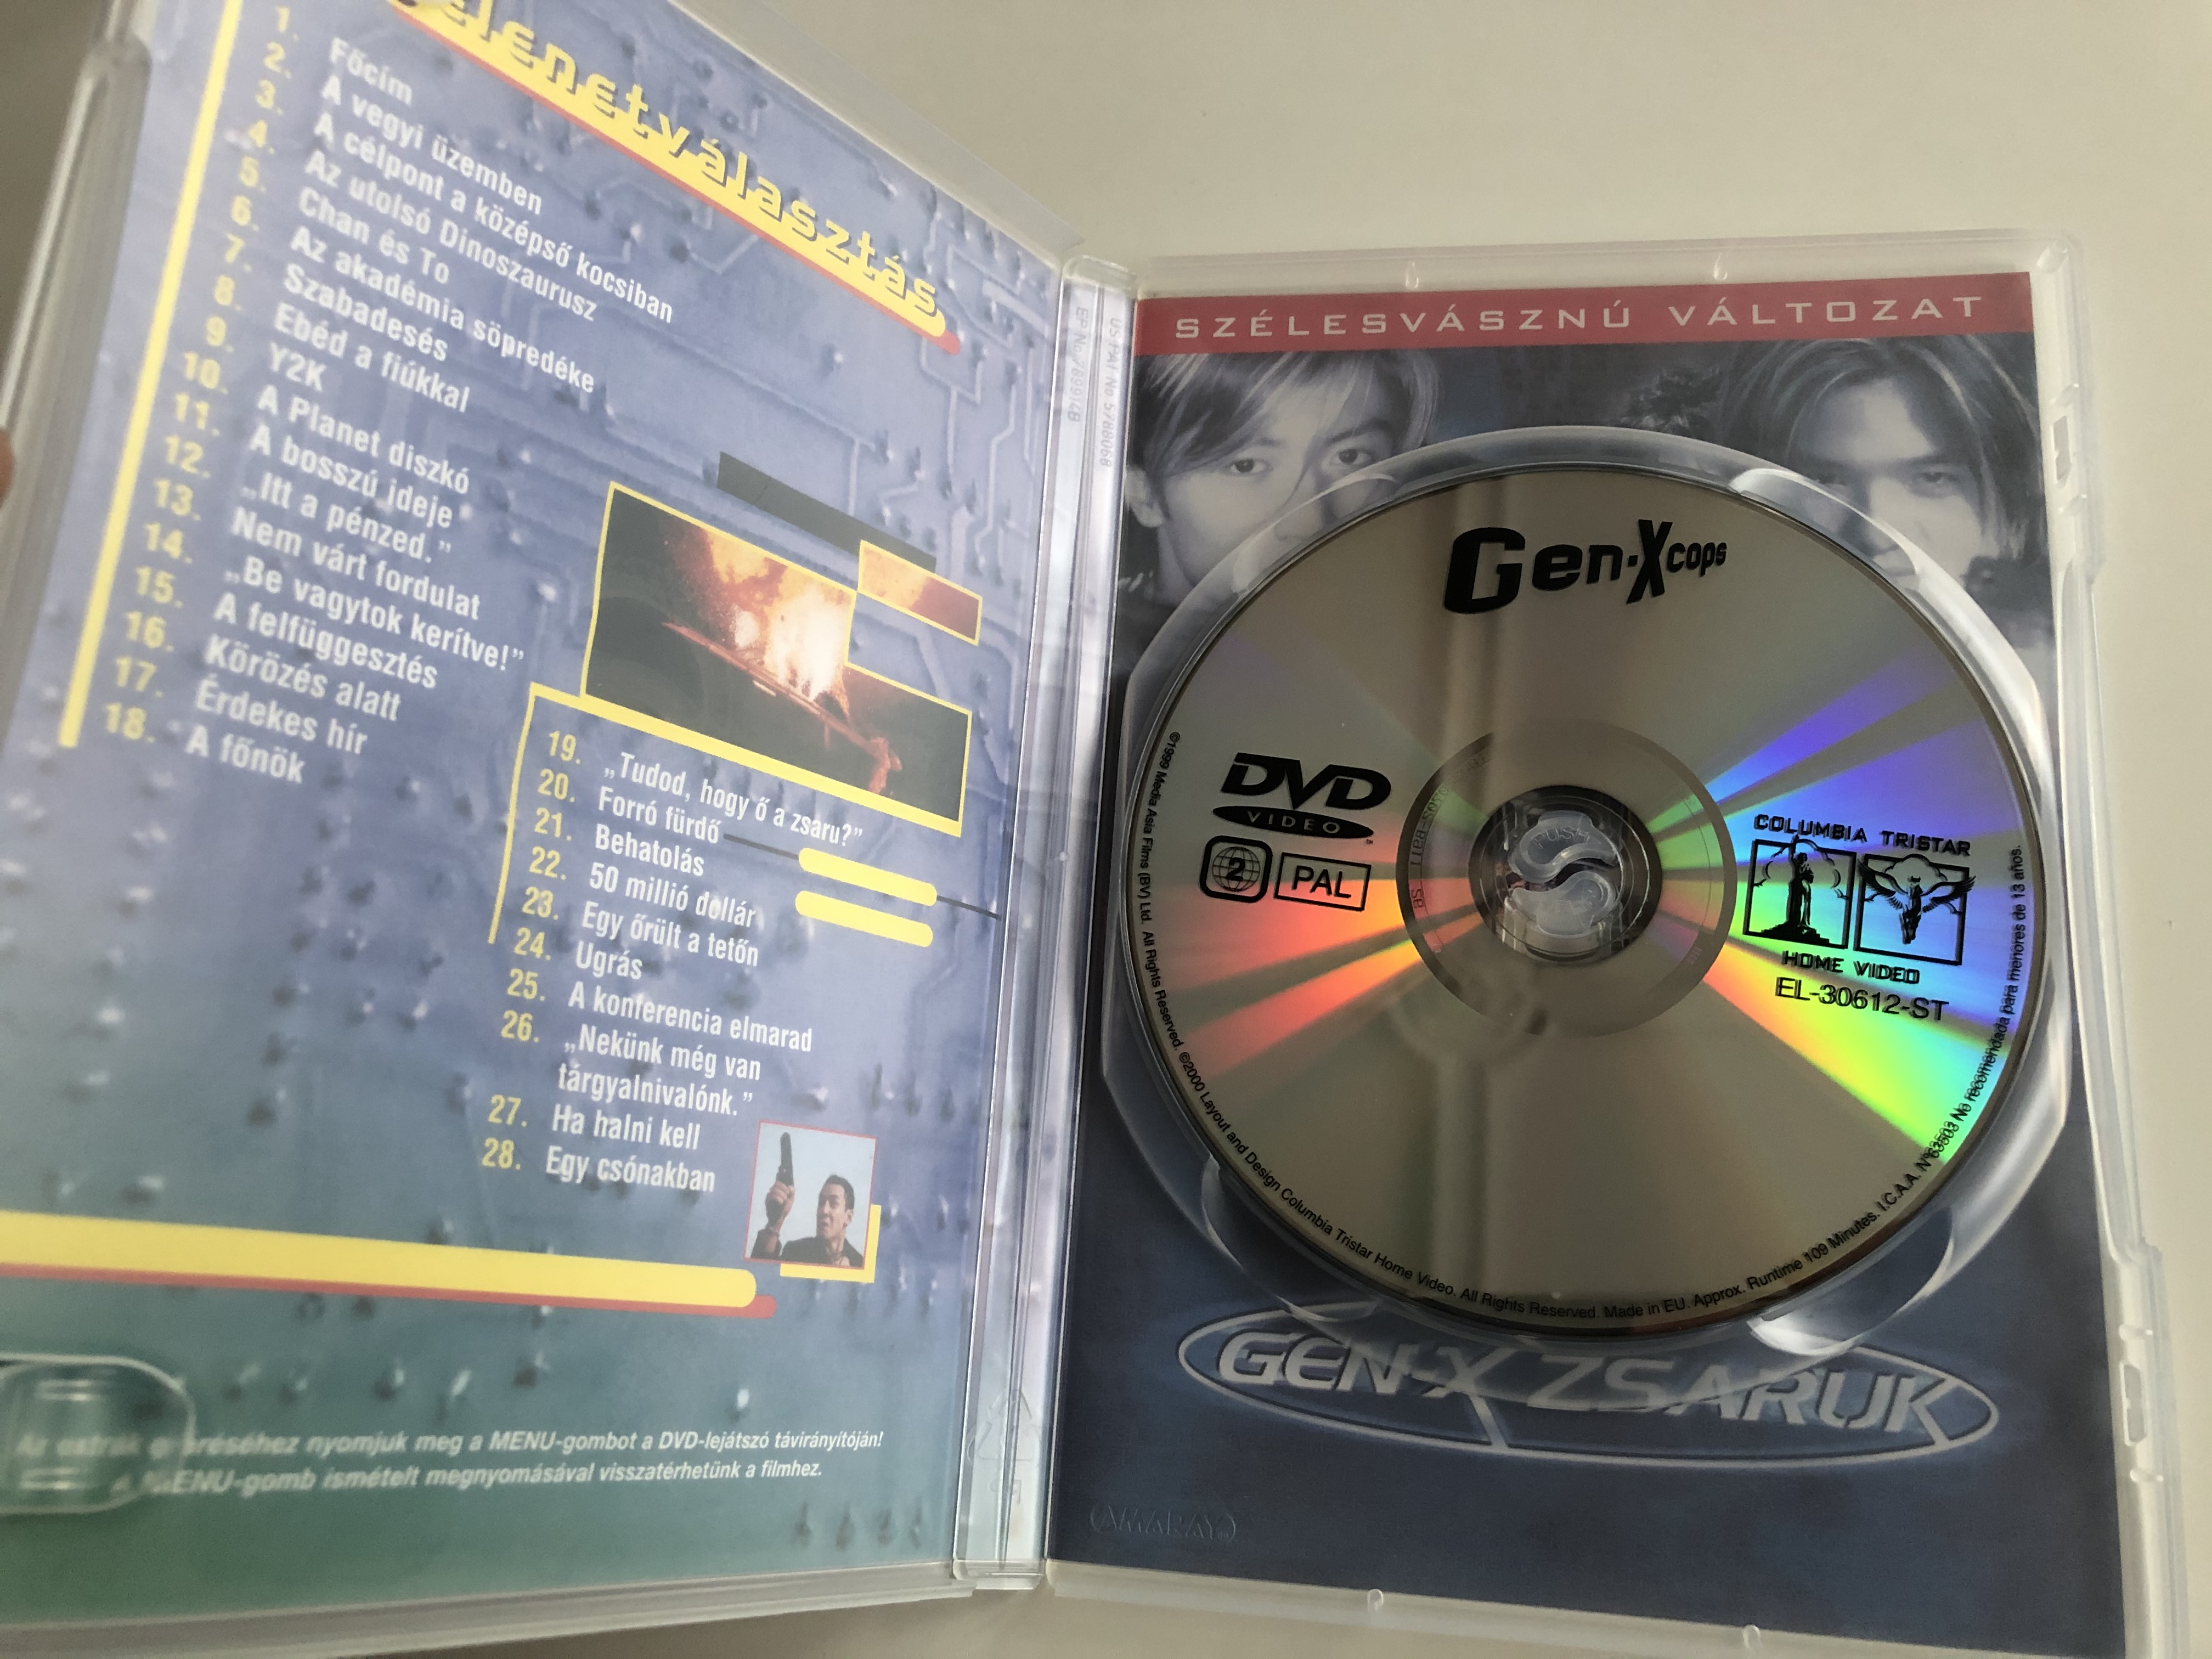 Gen-X Cops DVD 1999 Gen-X Zsaruk (特警新人類) / Directed by Benny Chan /  Starring: Benny Chan, John Chong, Jackie Chan, Willie Chan, Thomas Chung